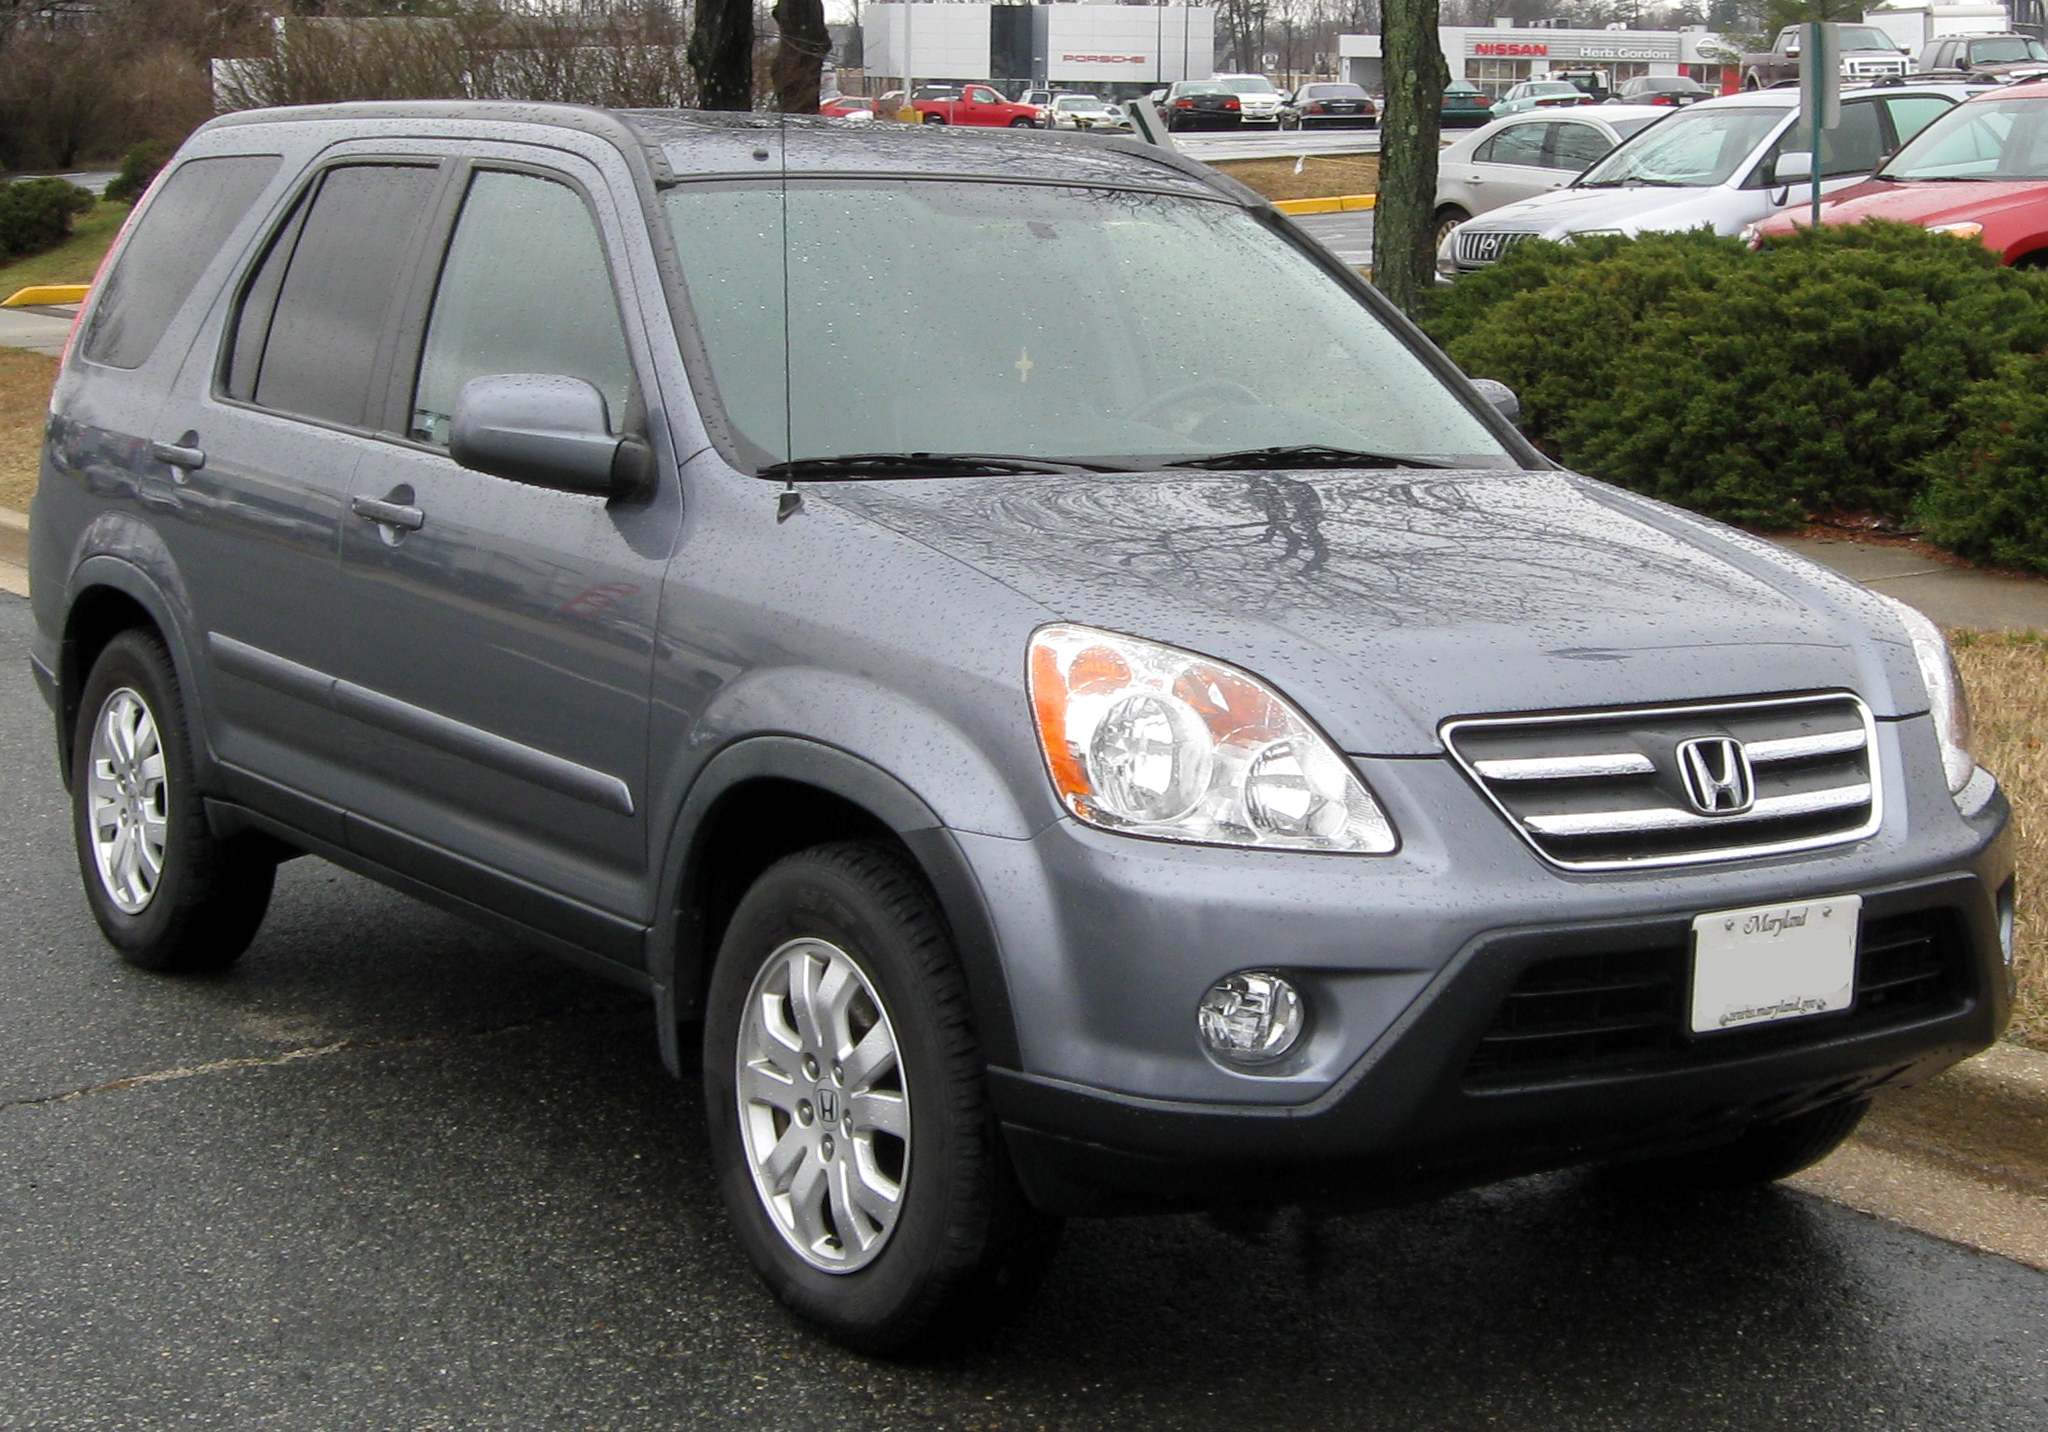 Honda crv 2006. Honda CR-V 2006. Honda CR-V 2005. Honda CRV 2 2006.